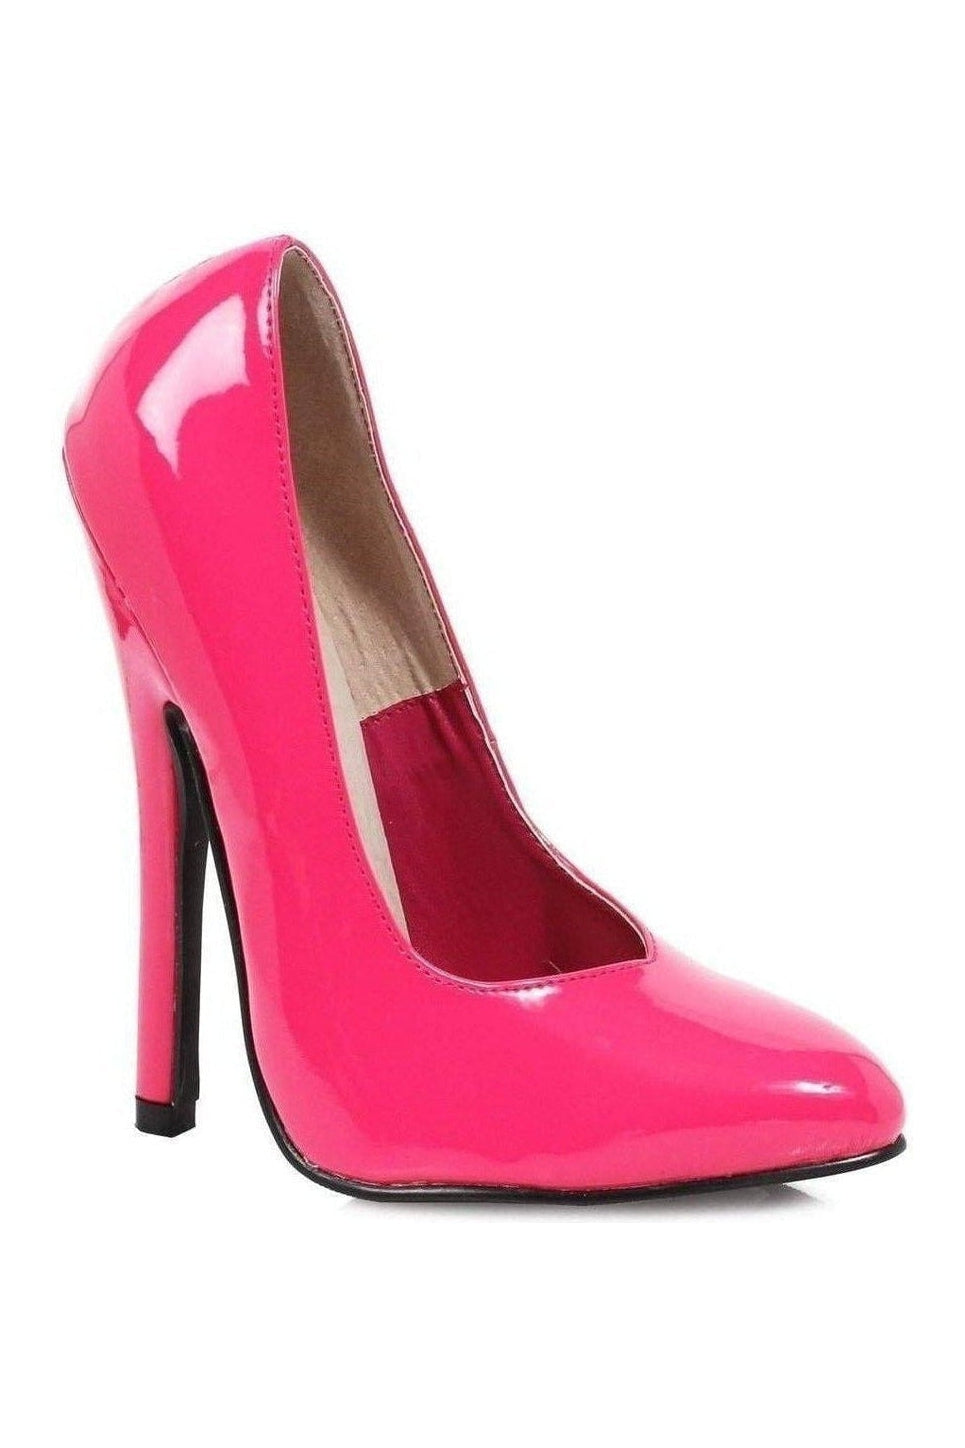 8260 Pump | Fuchsia Patent-Ellie Shoes-SEXYSHOES.COM